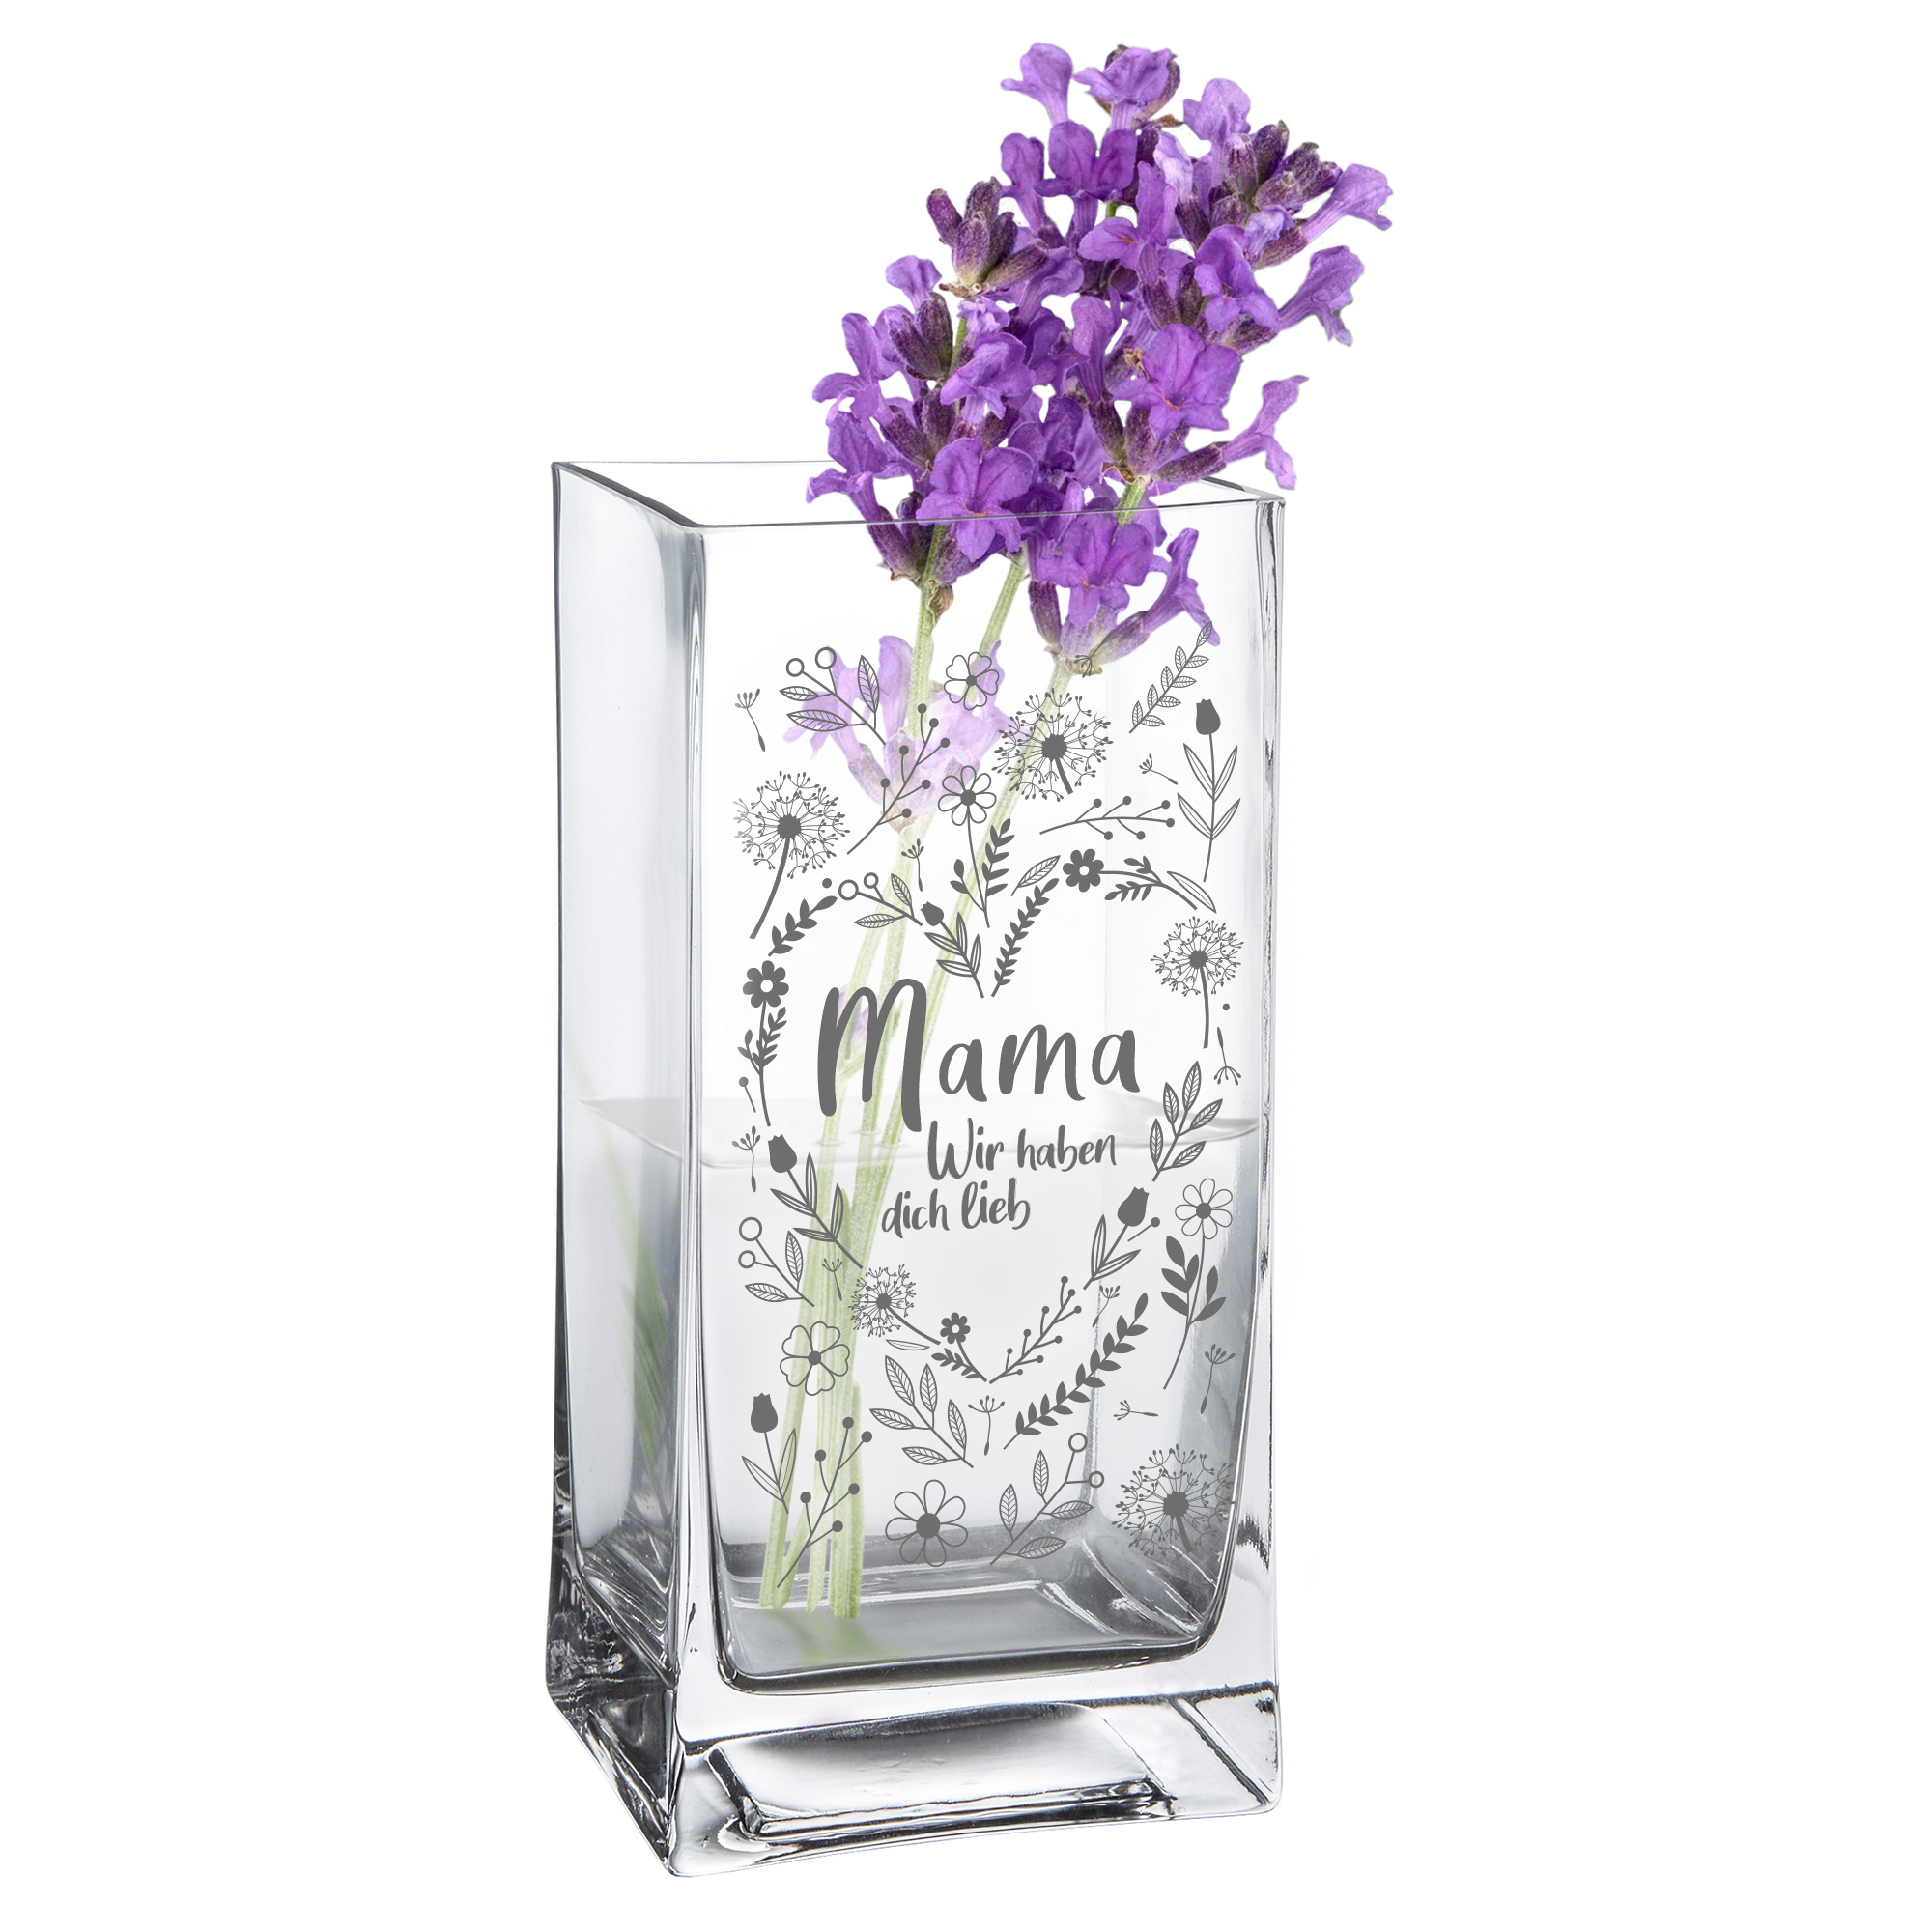 Eckige Vase - Blumenherz für Mama 0006-0019-111-AZ - 5